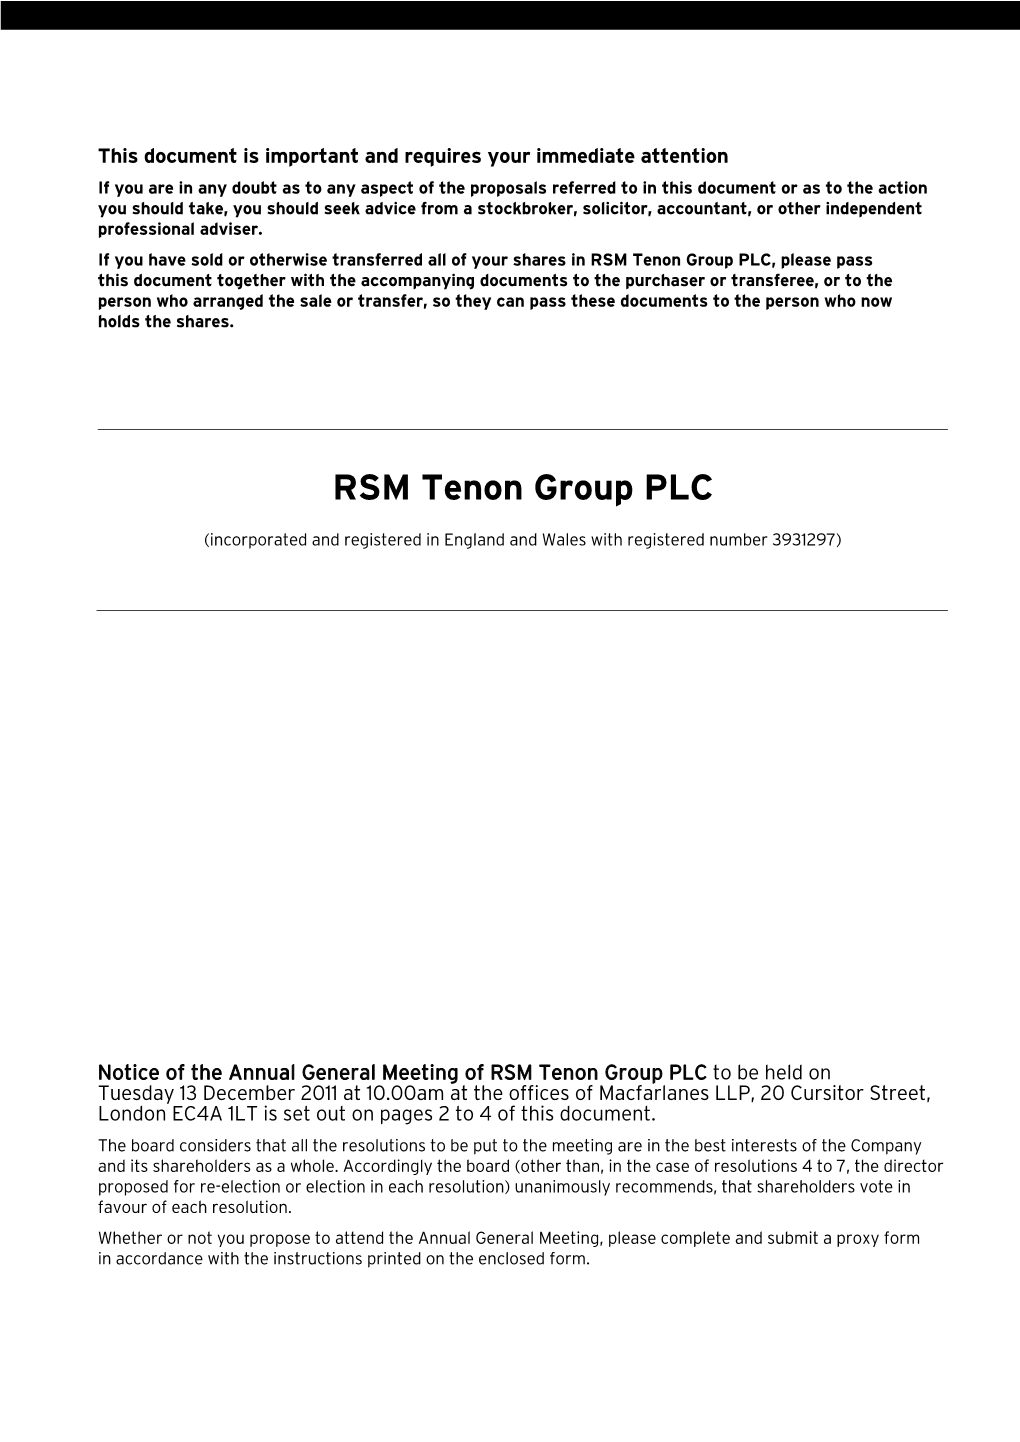 RSM Tenon Group